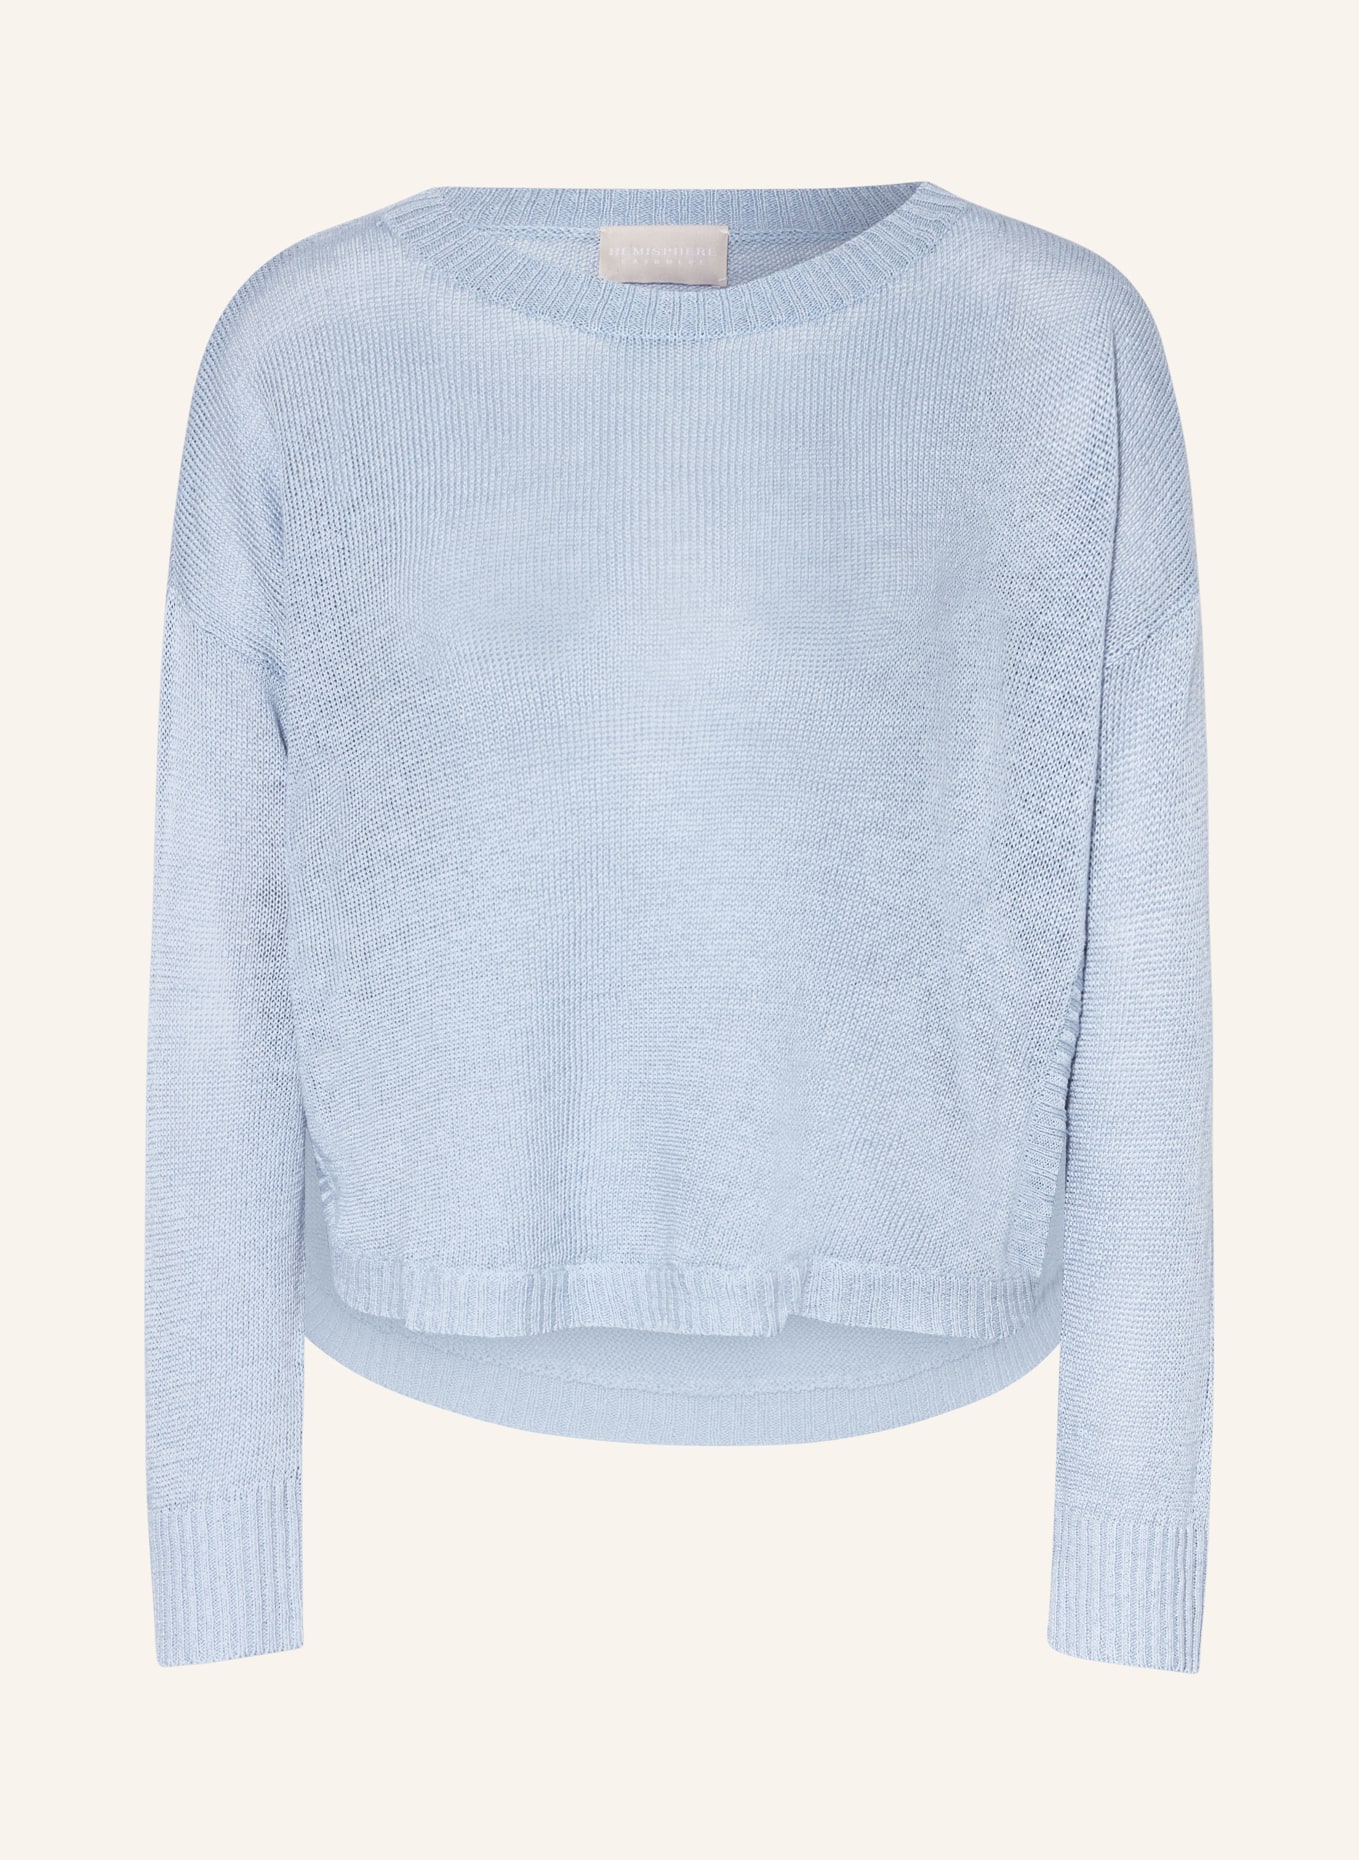 HEMISPHERE Linen sweater, Color: LIGHT BLUE (Image 1)